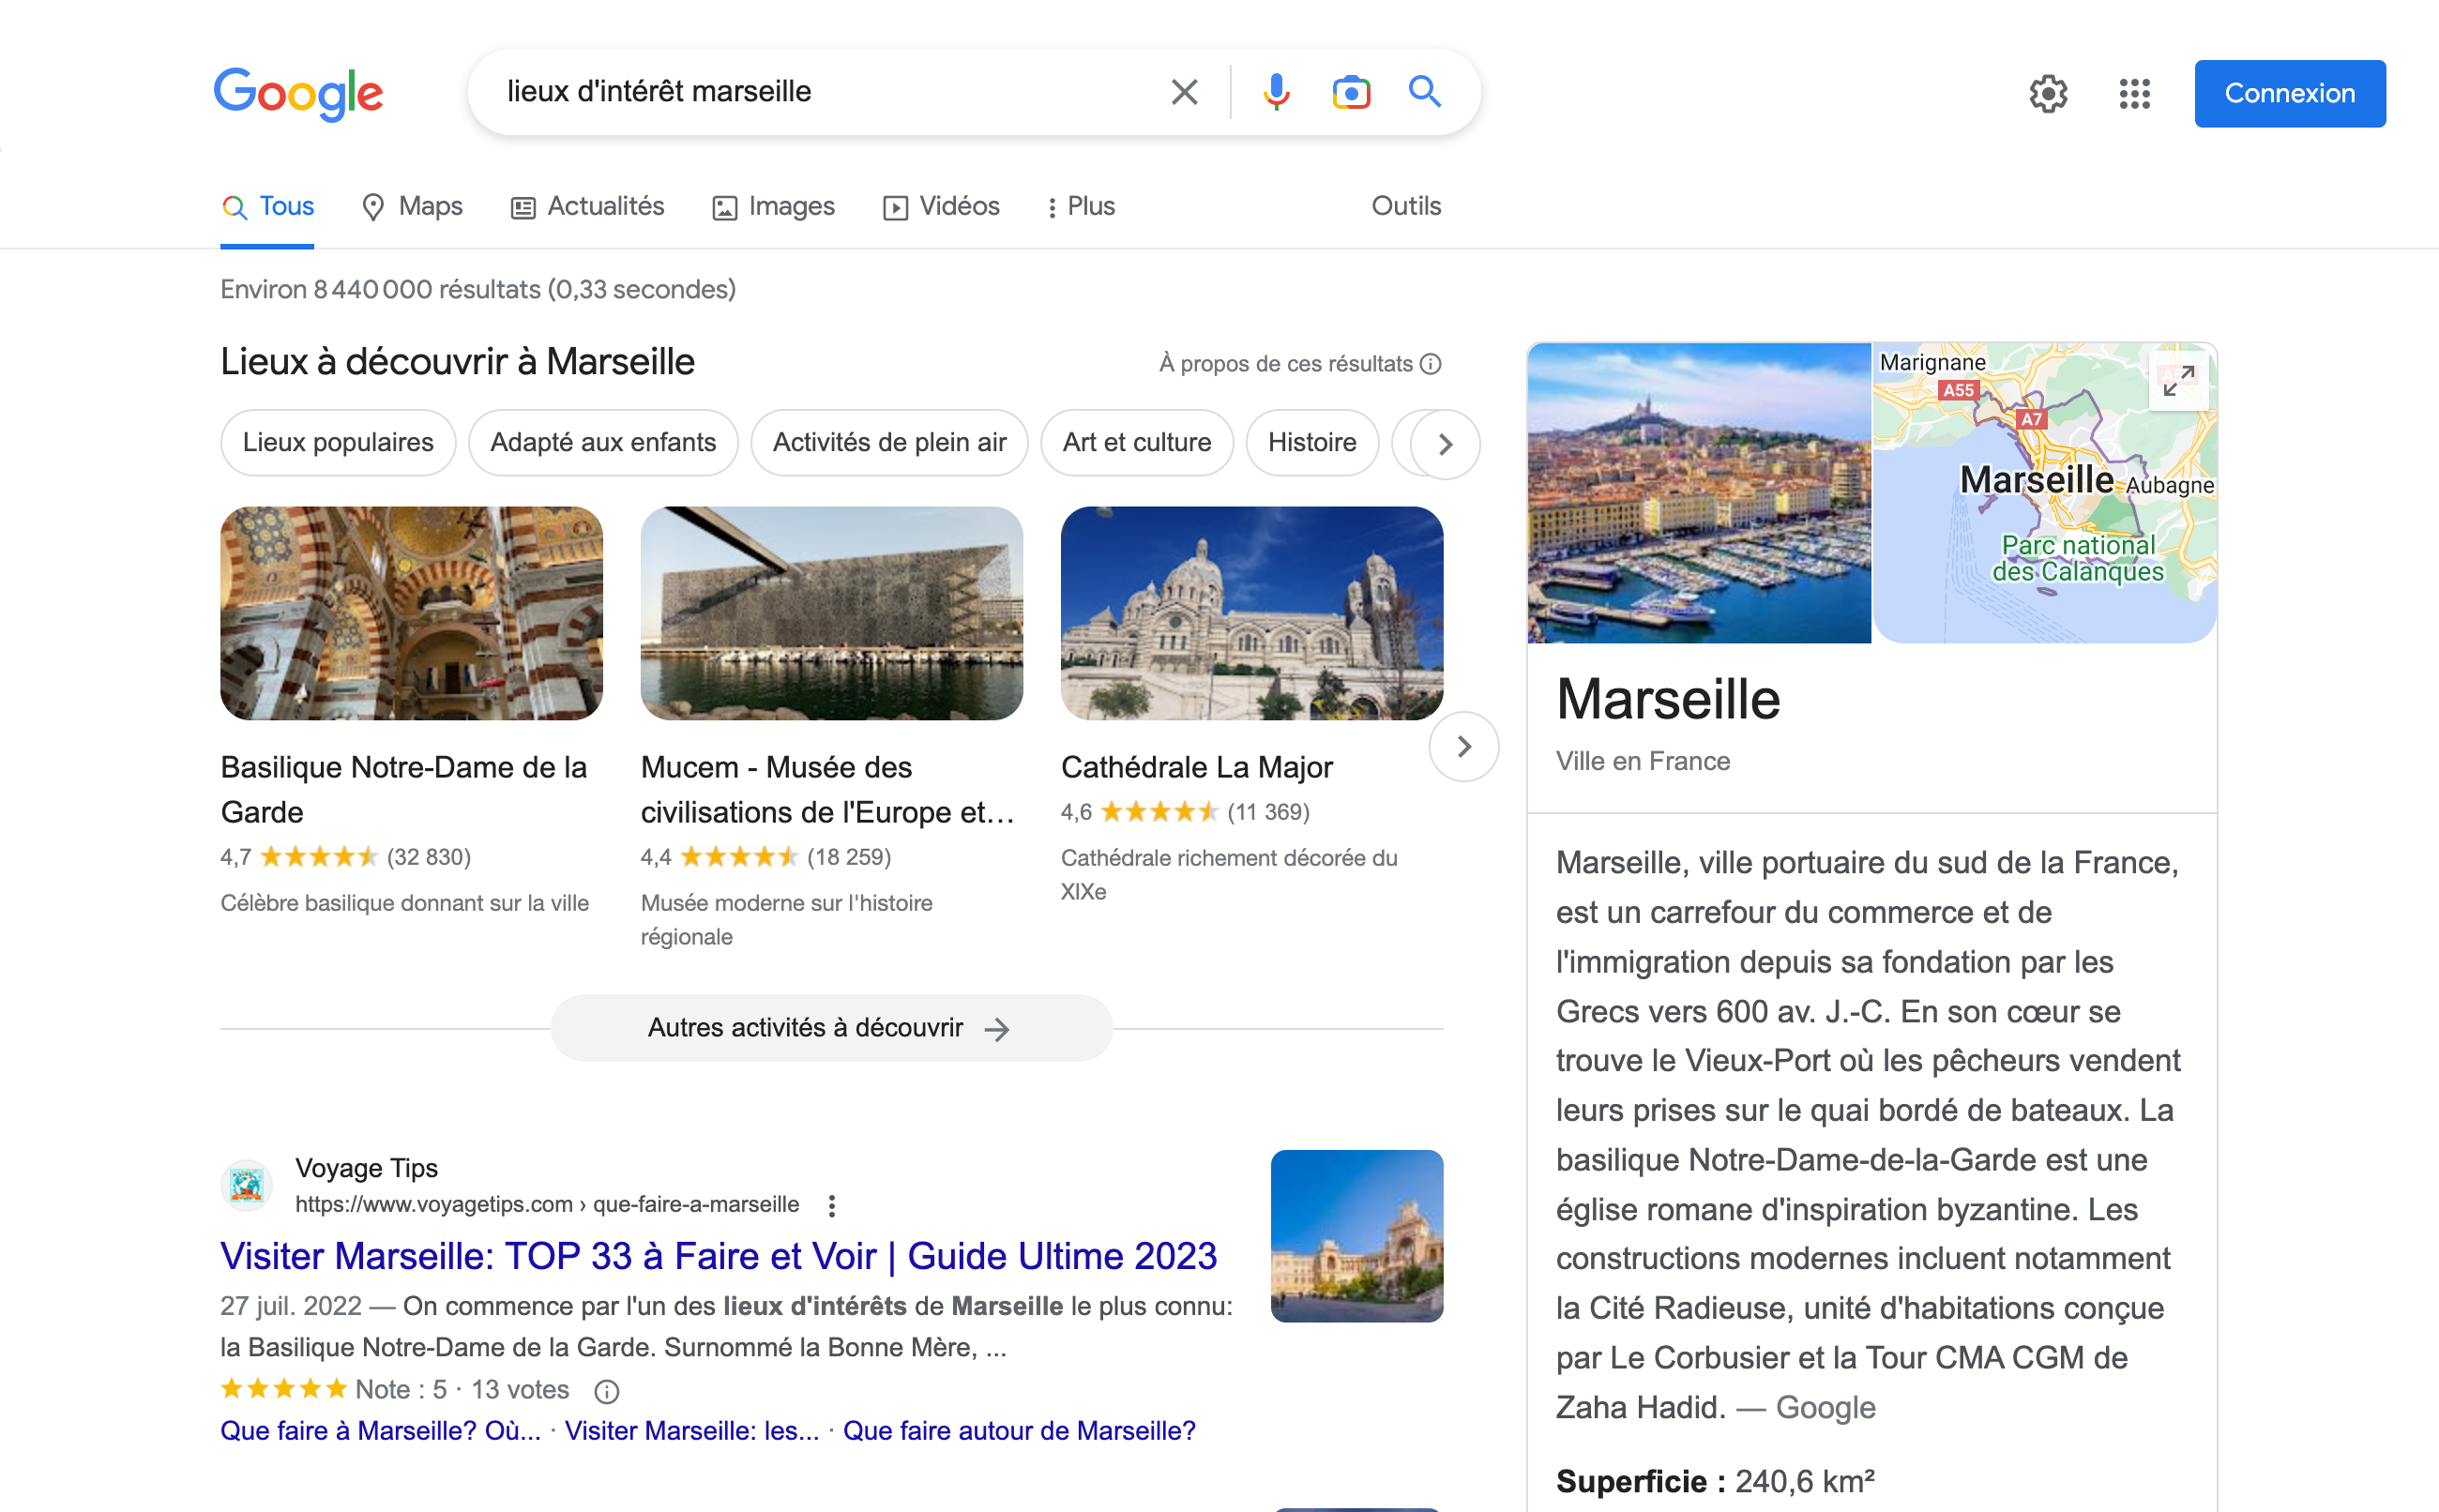 Résultats de recherche Google pour "lieux d'intérêt marseille"